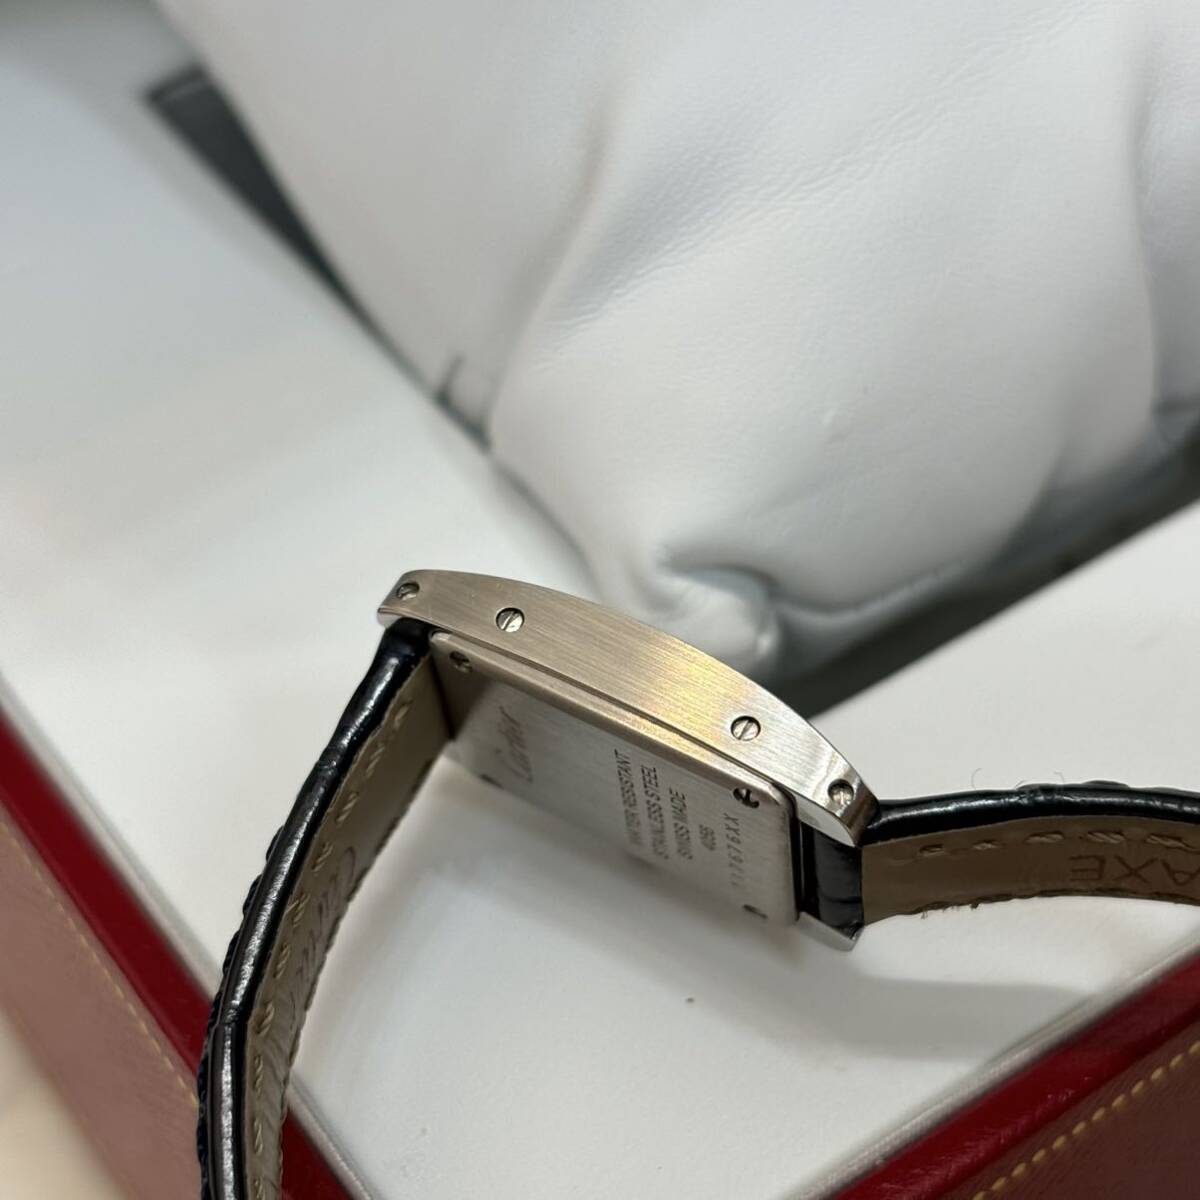  прекрасный товар 2017 год покупка Cartier CARTIER WSTA0032 Tank American Mini кварц женские наручные часы коробка, гарантийная карточка, кейс 